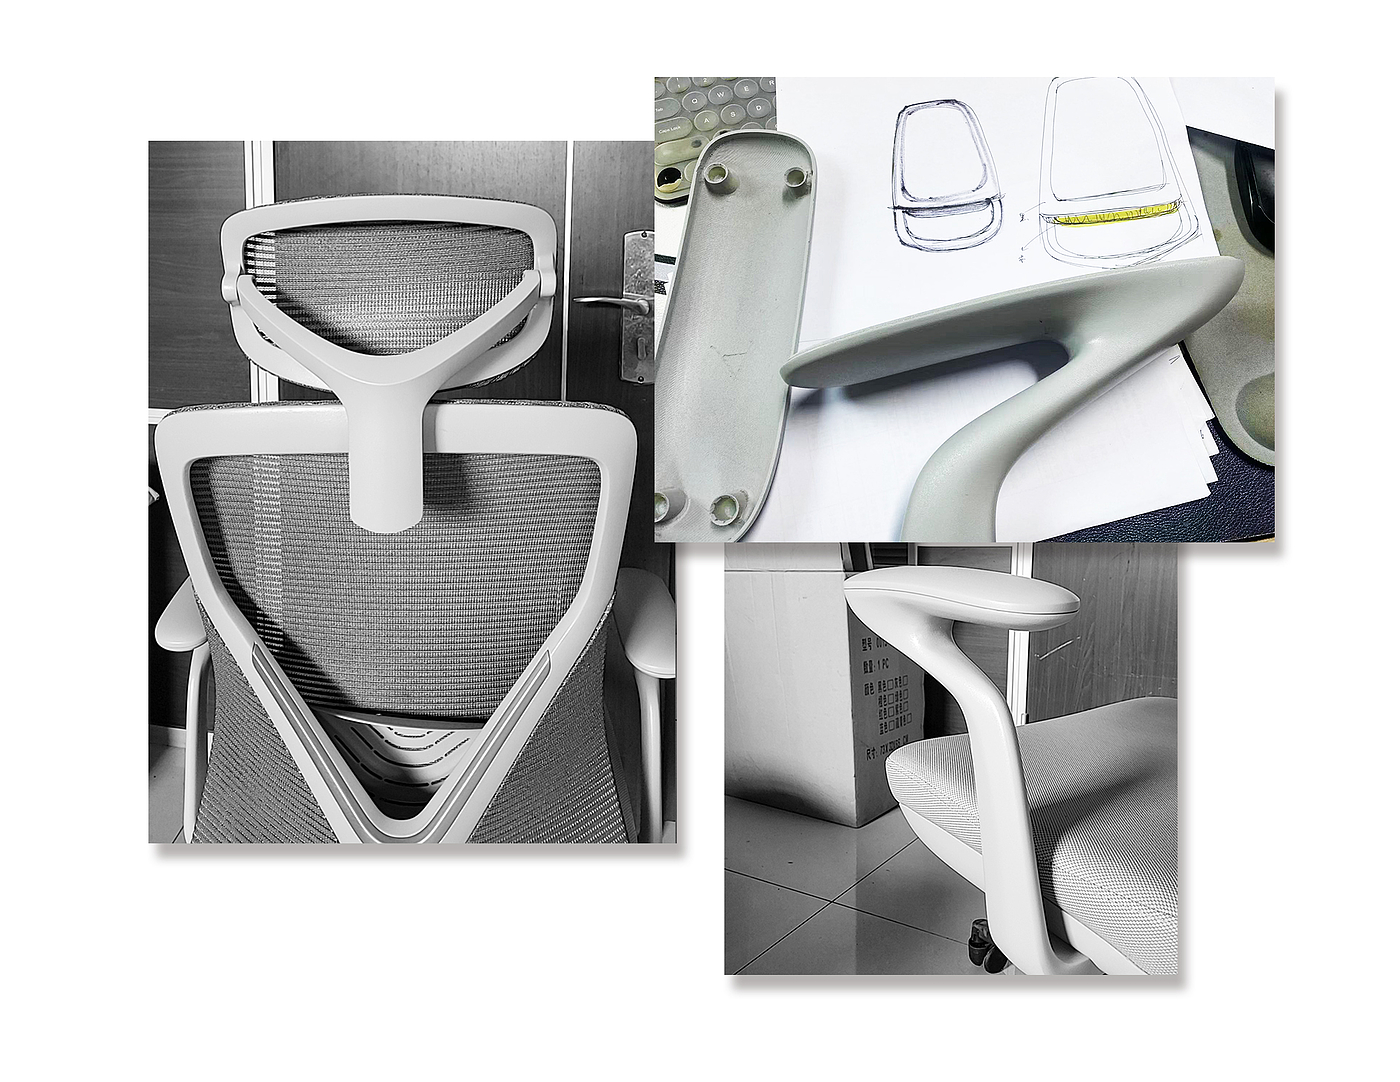 椅子设计，家具设计，人体工程学设计，办公椅设计，坐具设计，